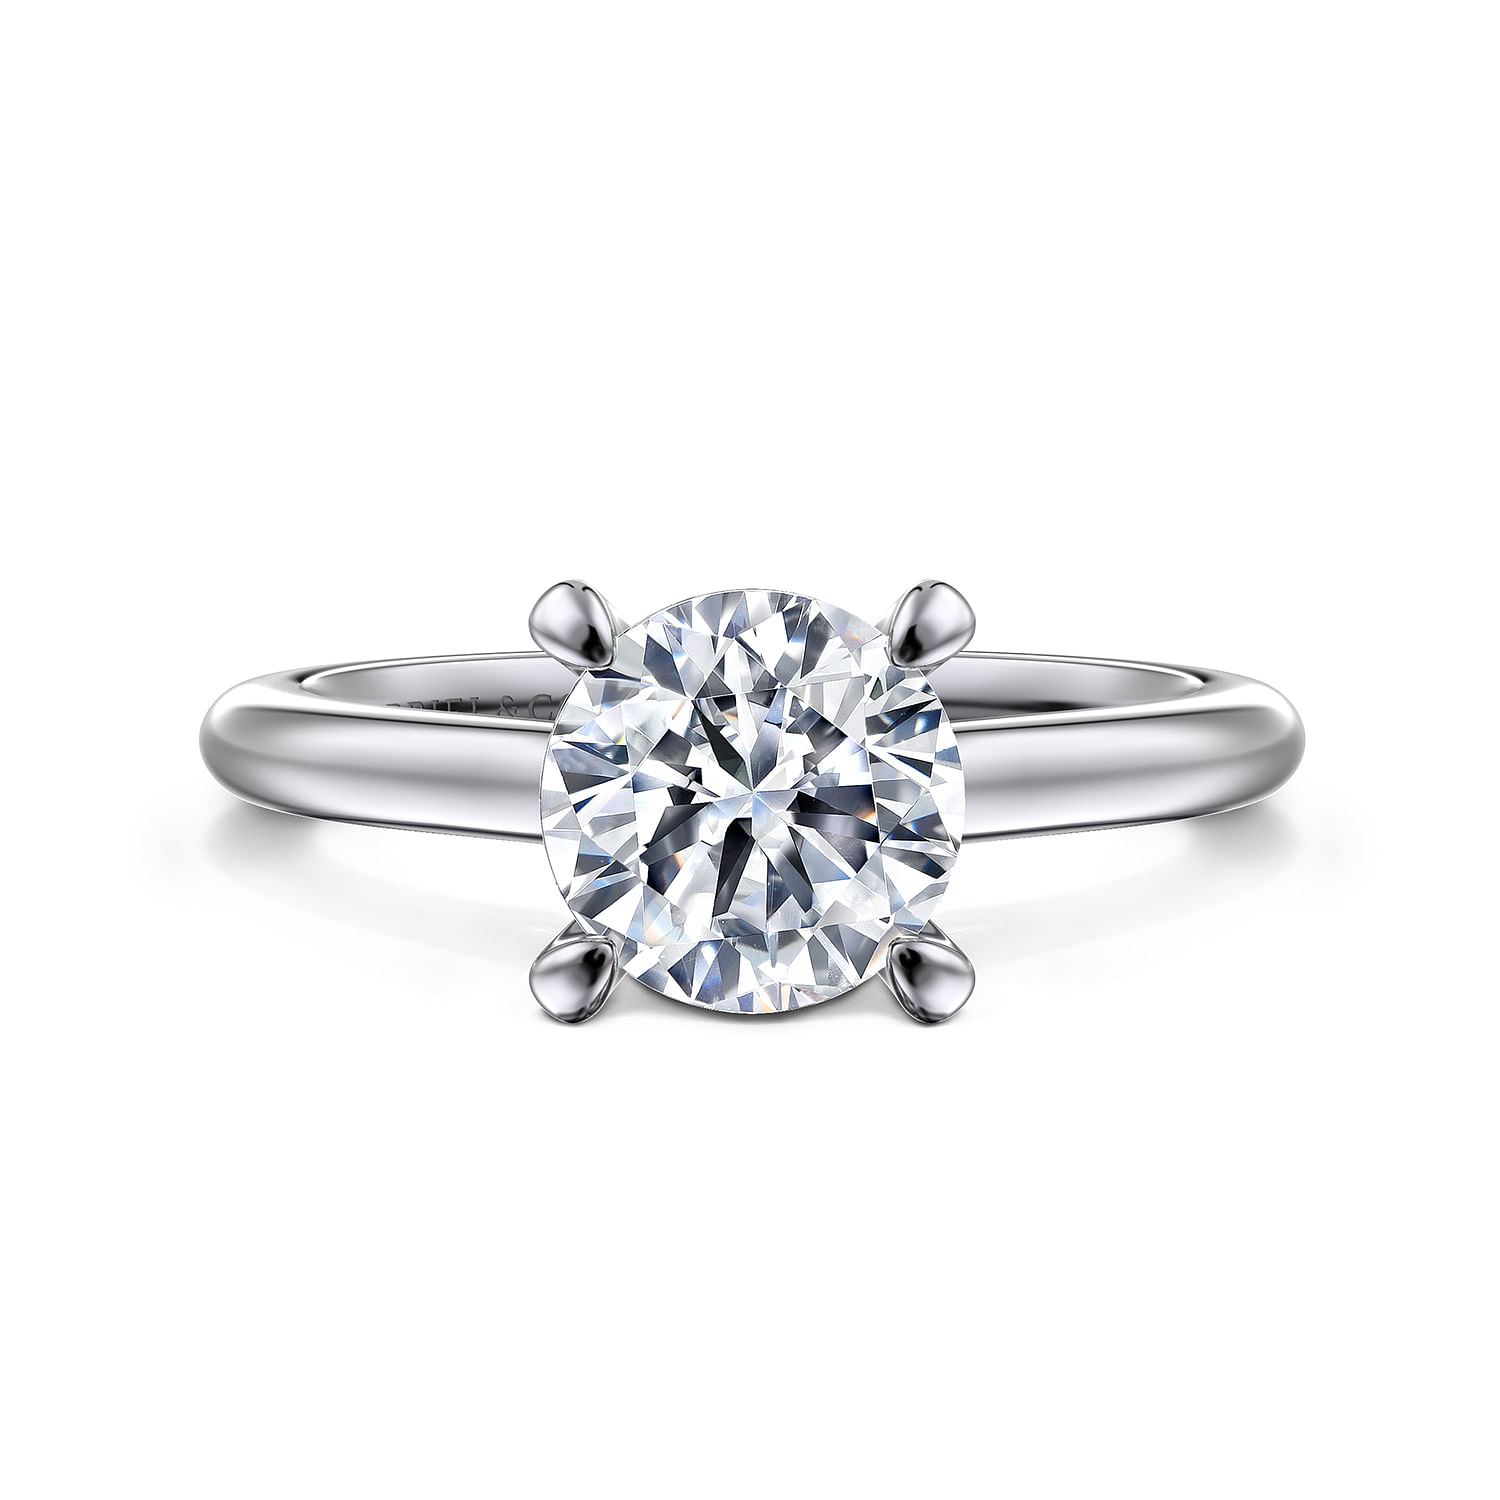 Valerie - 14K White Gold Round Diamond Engagement Ring